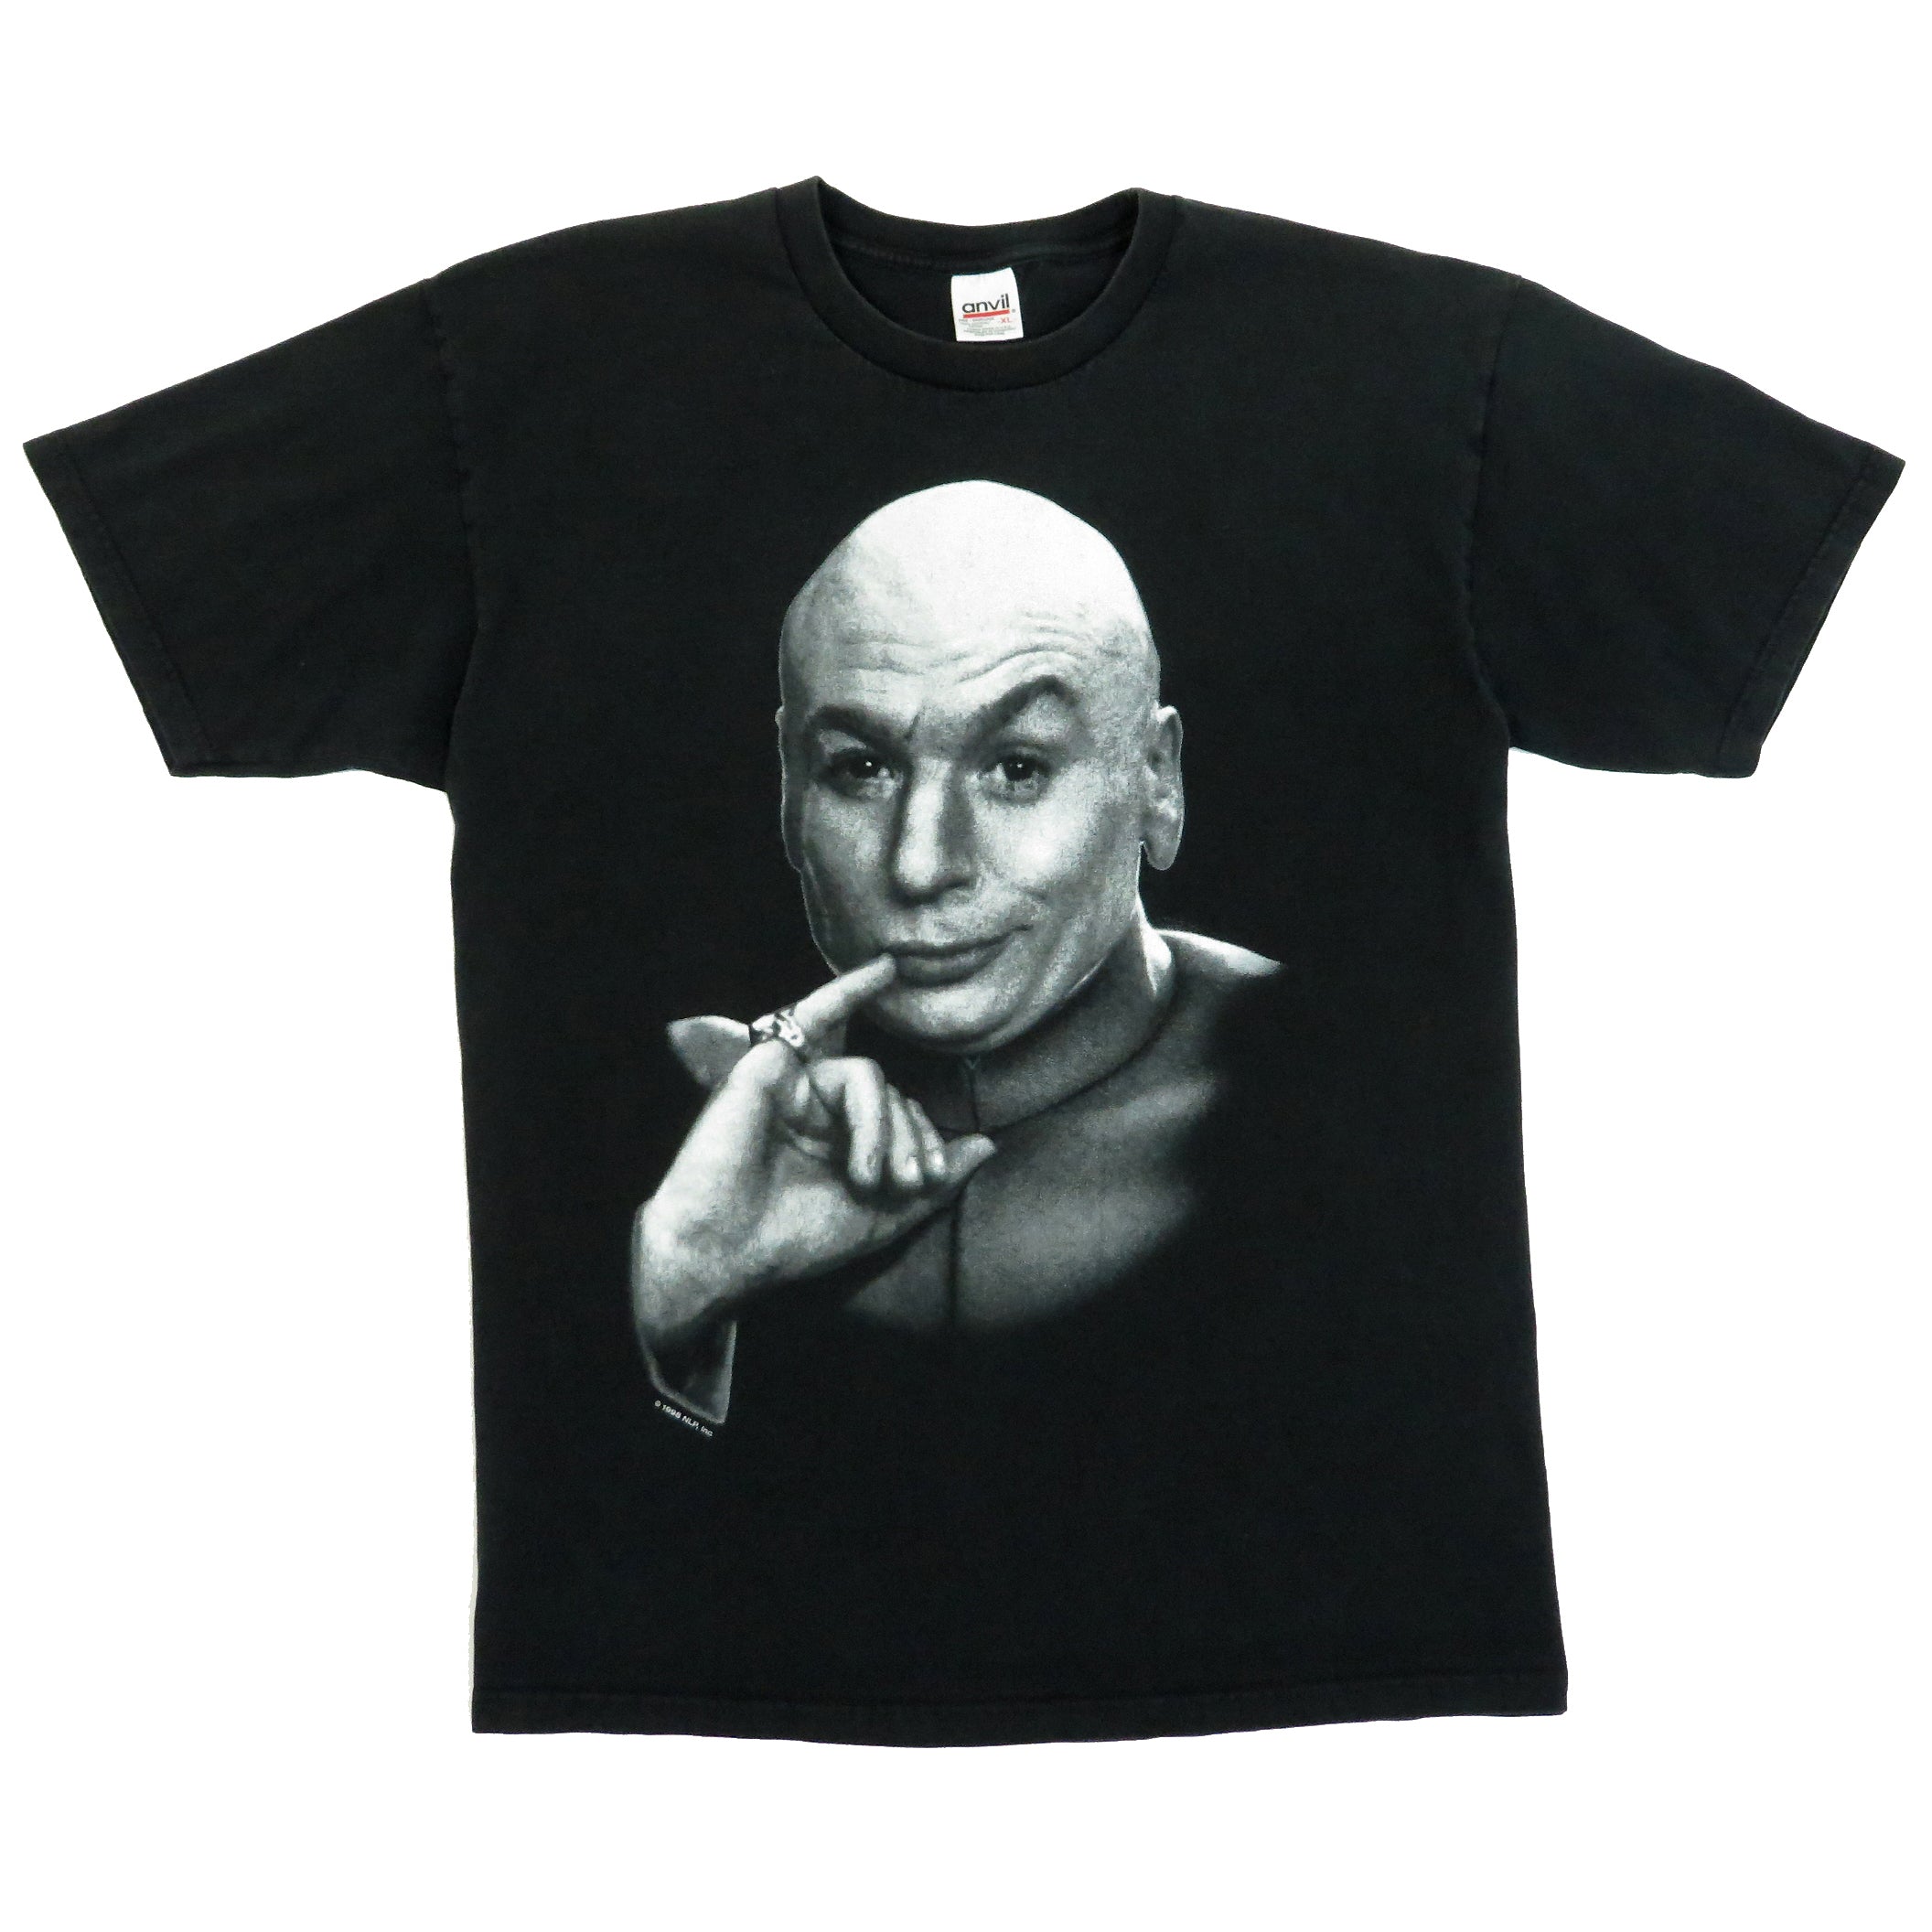 Vintage 1998 Dr. Evil T-Shirt Sz XL